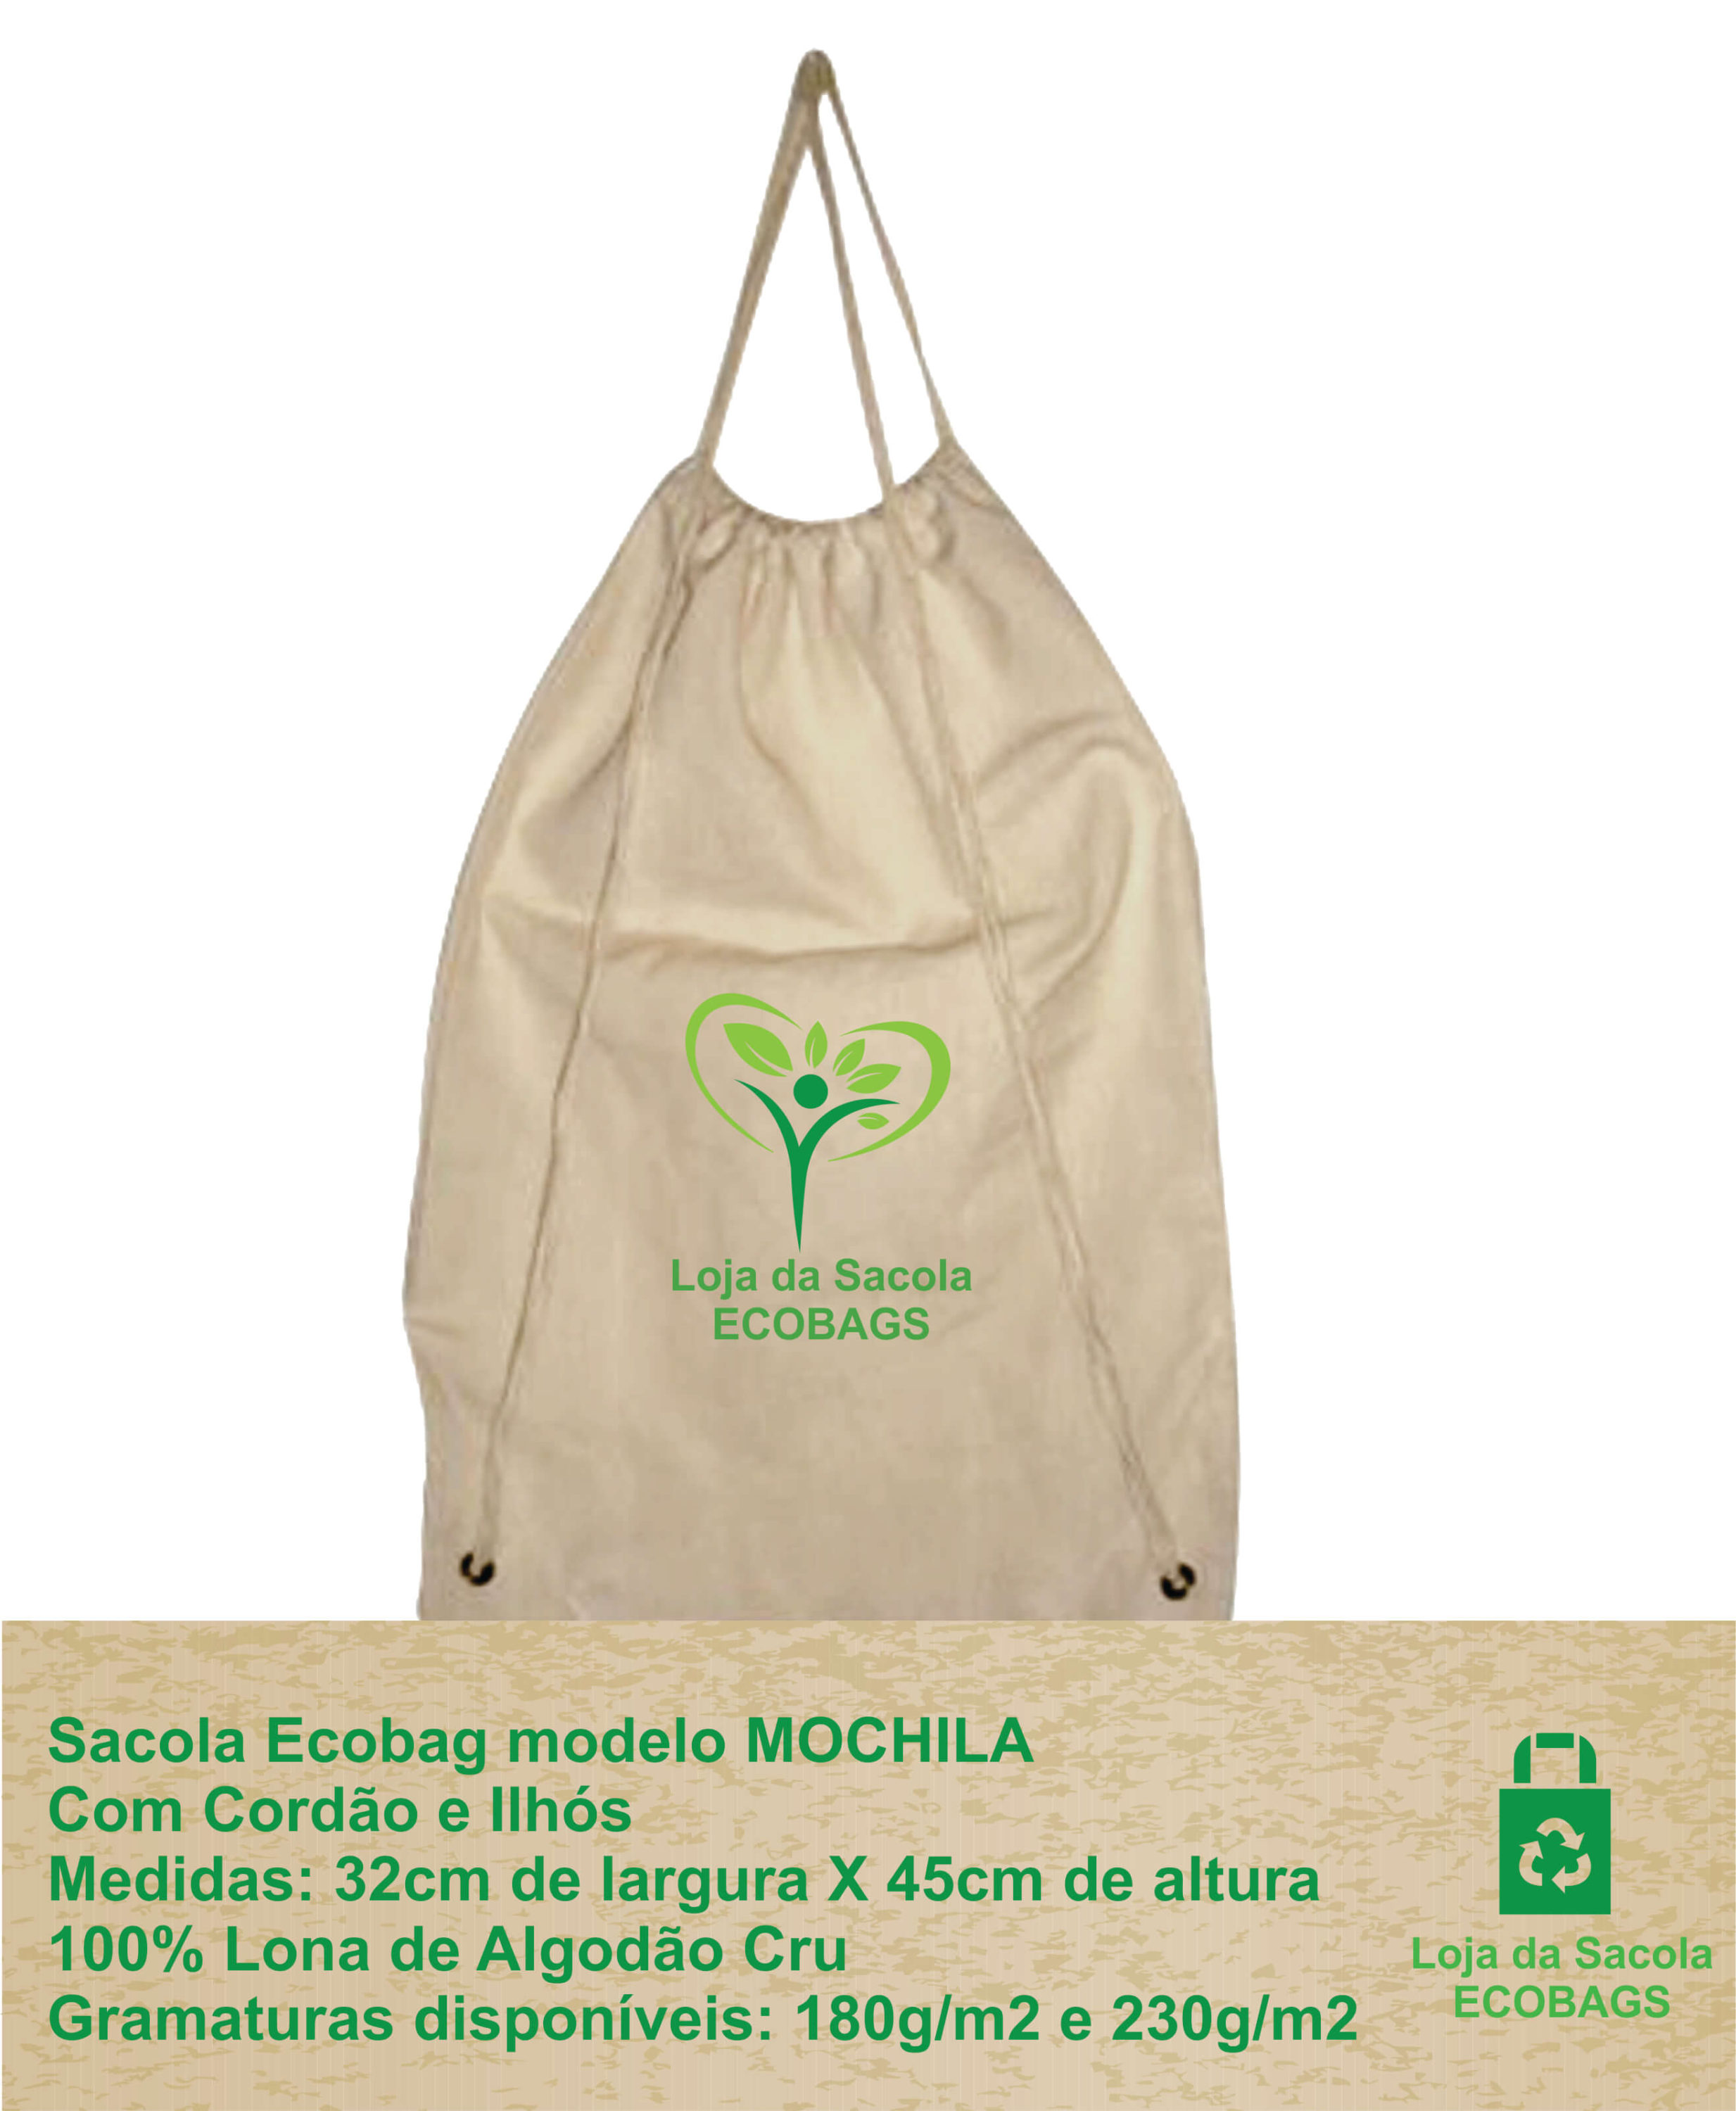 Sacola Ecobag - Modelo Mochila com Cordão e Ilhós